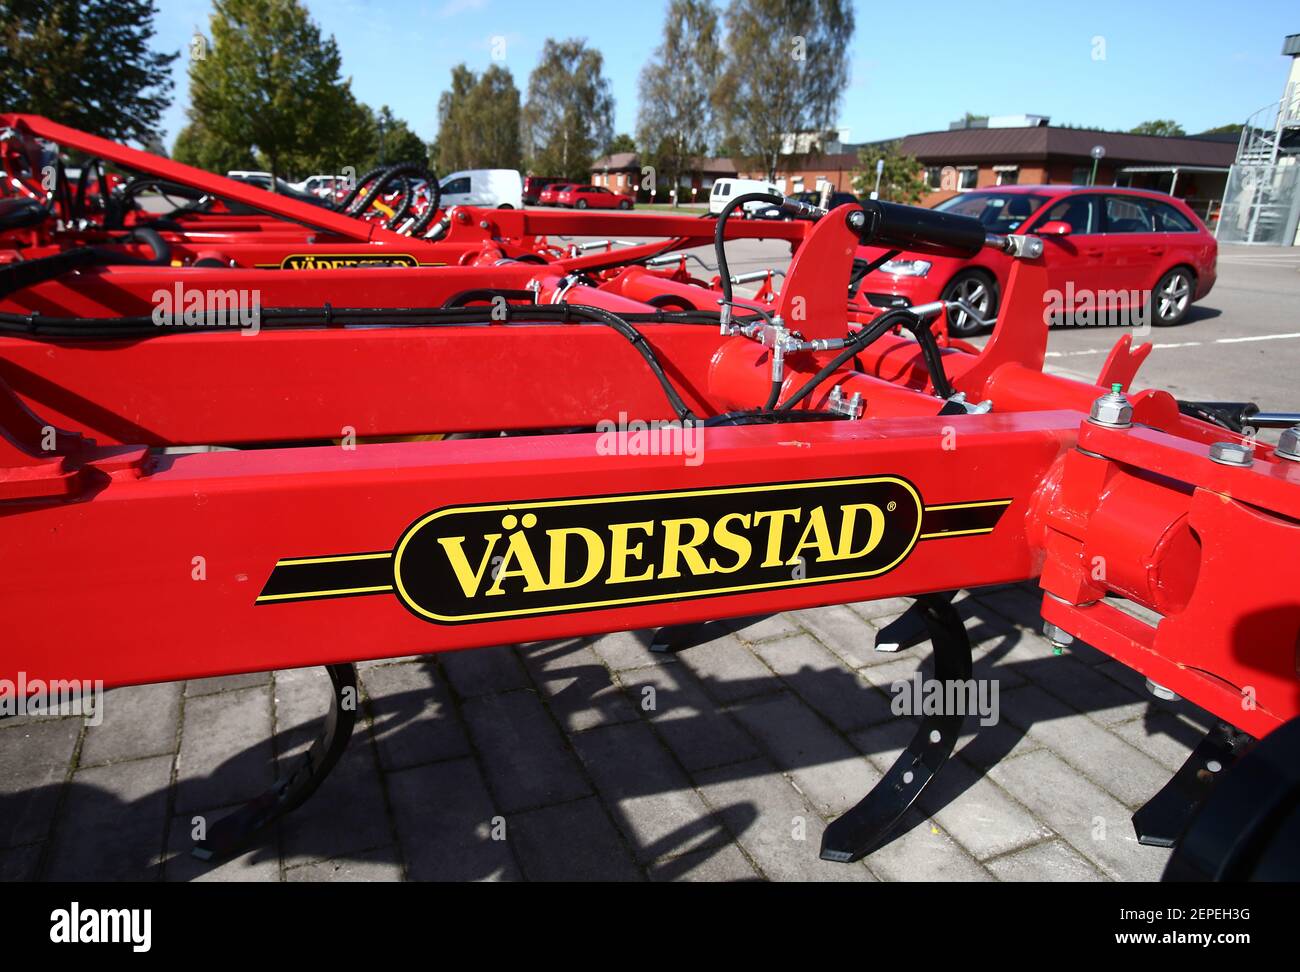 VÄDERSTAD, SCHWEDEN- 18. SEPTEMBER 2014:Väderstad ab (ehemals Väderstad-Verken ab) mit Sitz in Väderstad ist ein schwedischer Hersteller von Landmaschinen für Bodenbearbeitung und Aussaat. Foto Jeppe Gustafsson Stockfoto